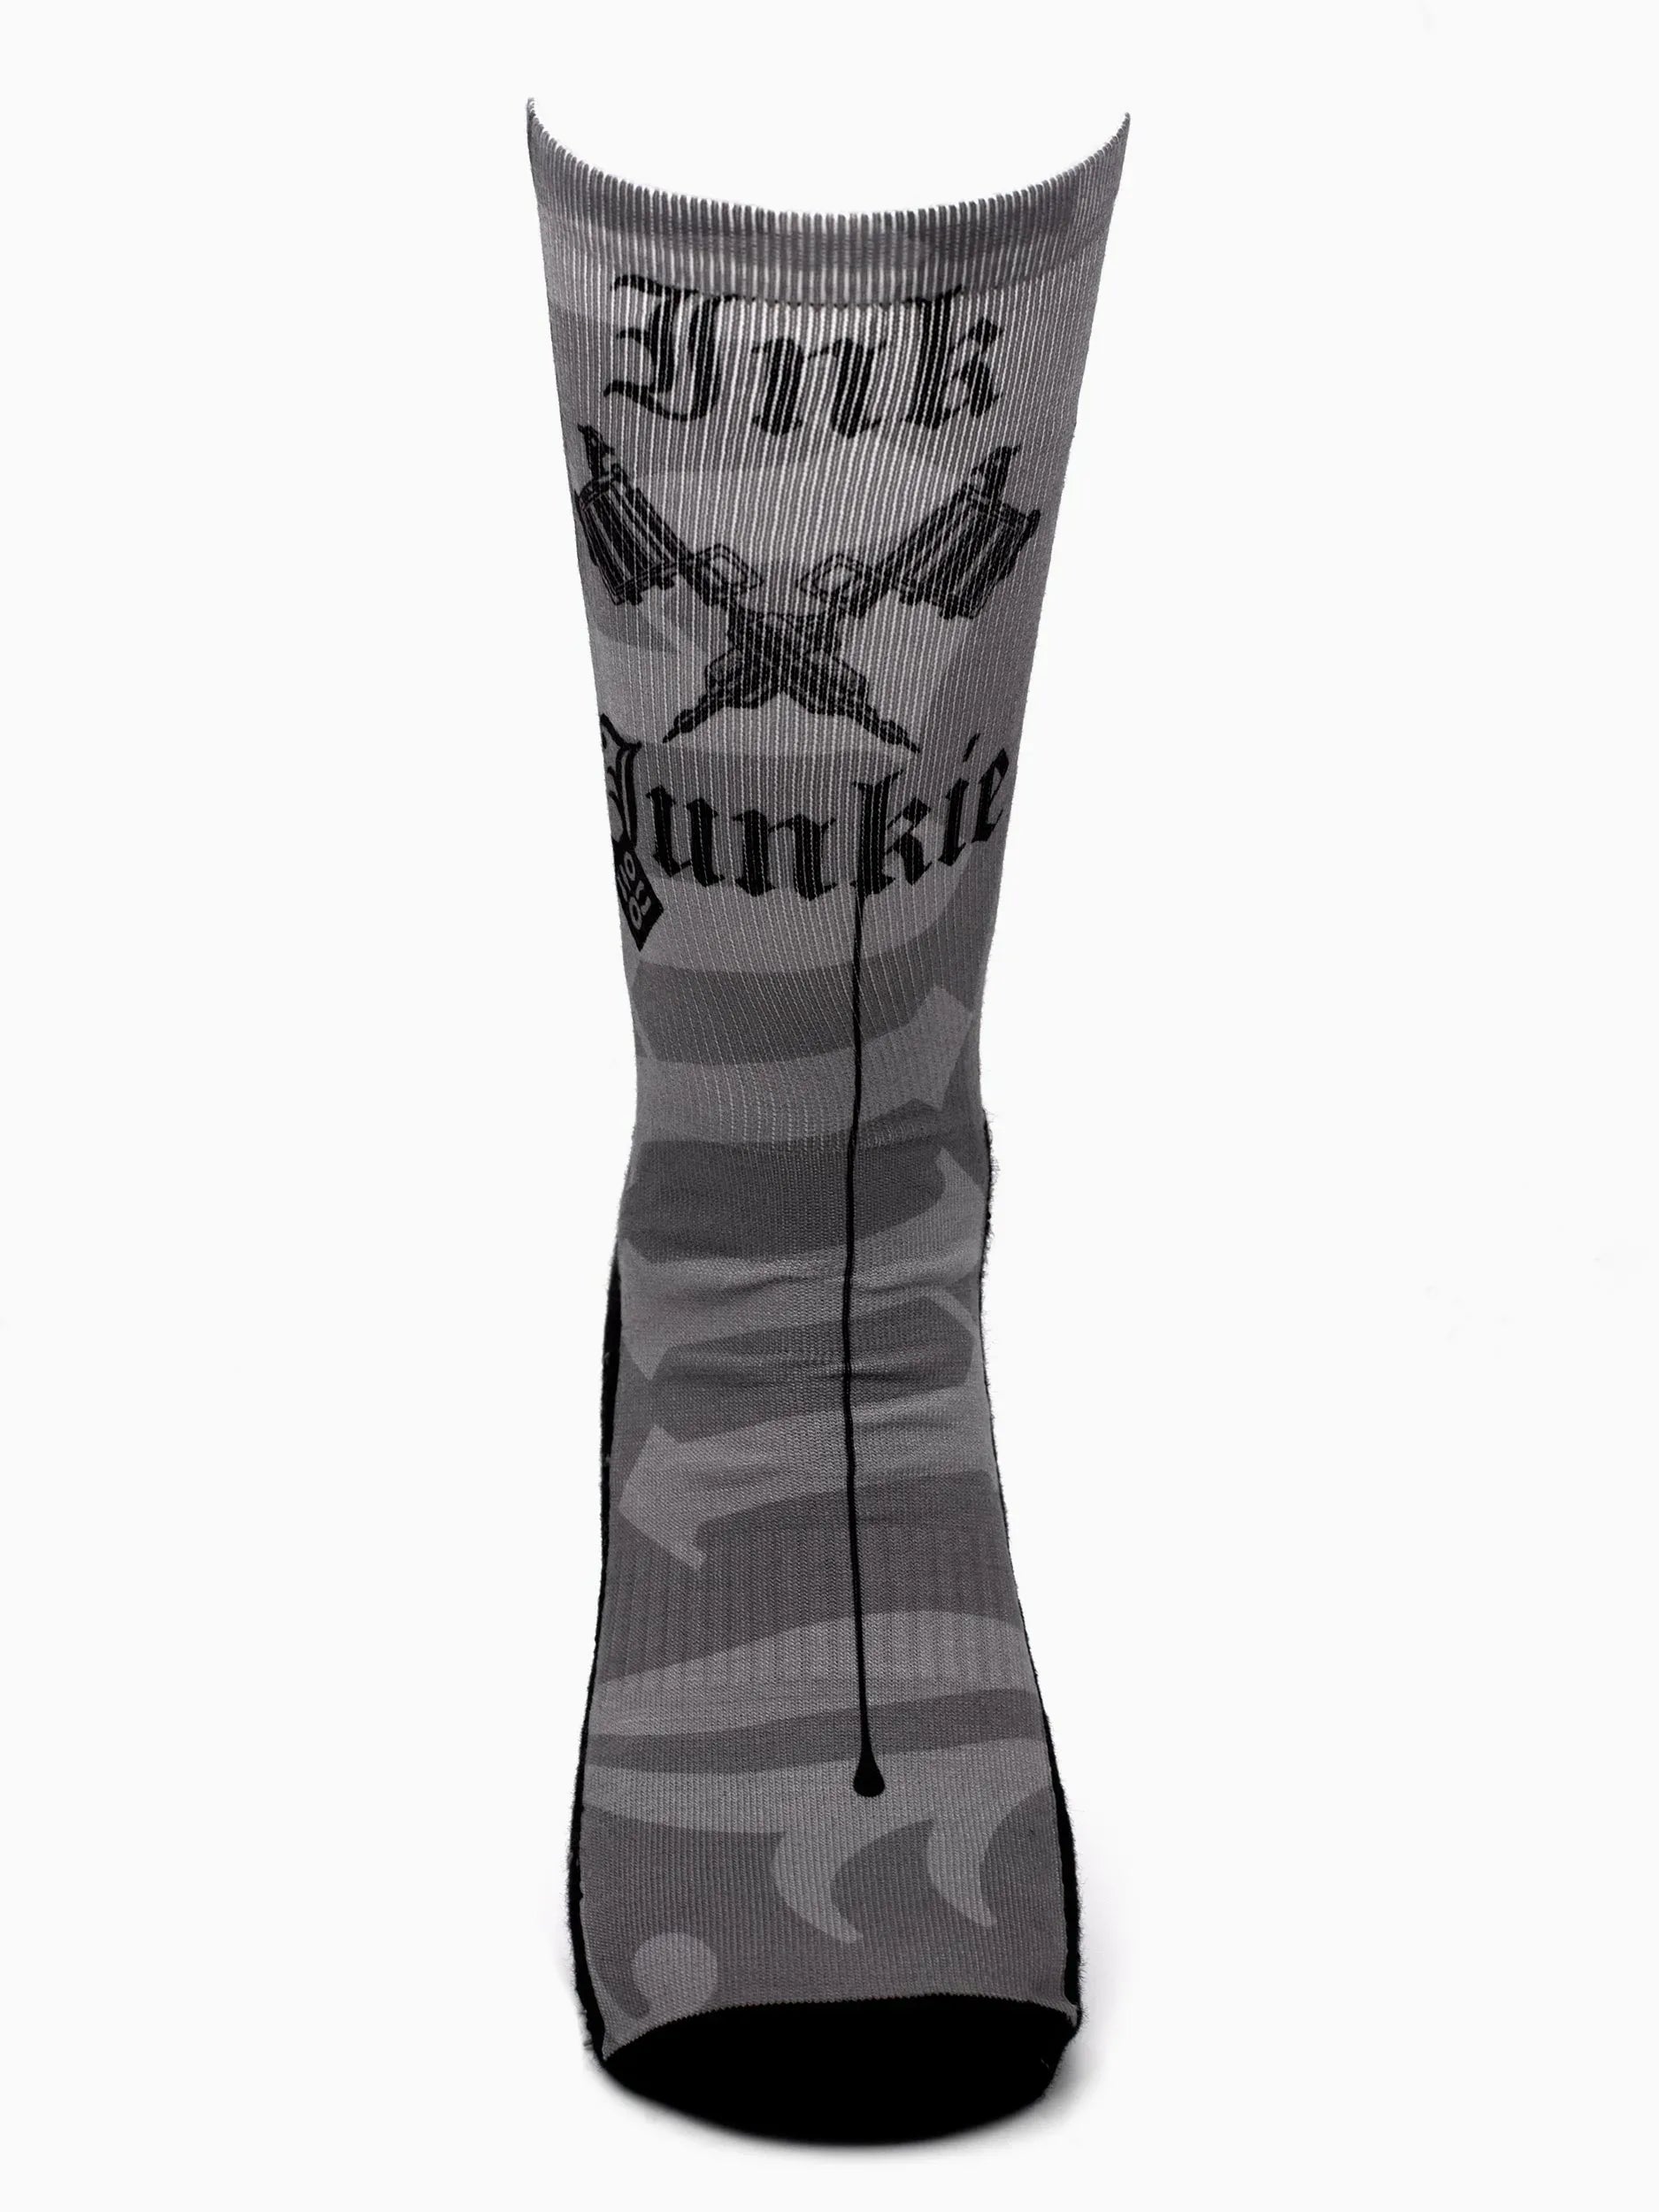 Κάλτσα Airlite Ink Junkie NoHo Collections